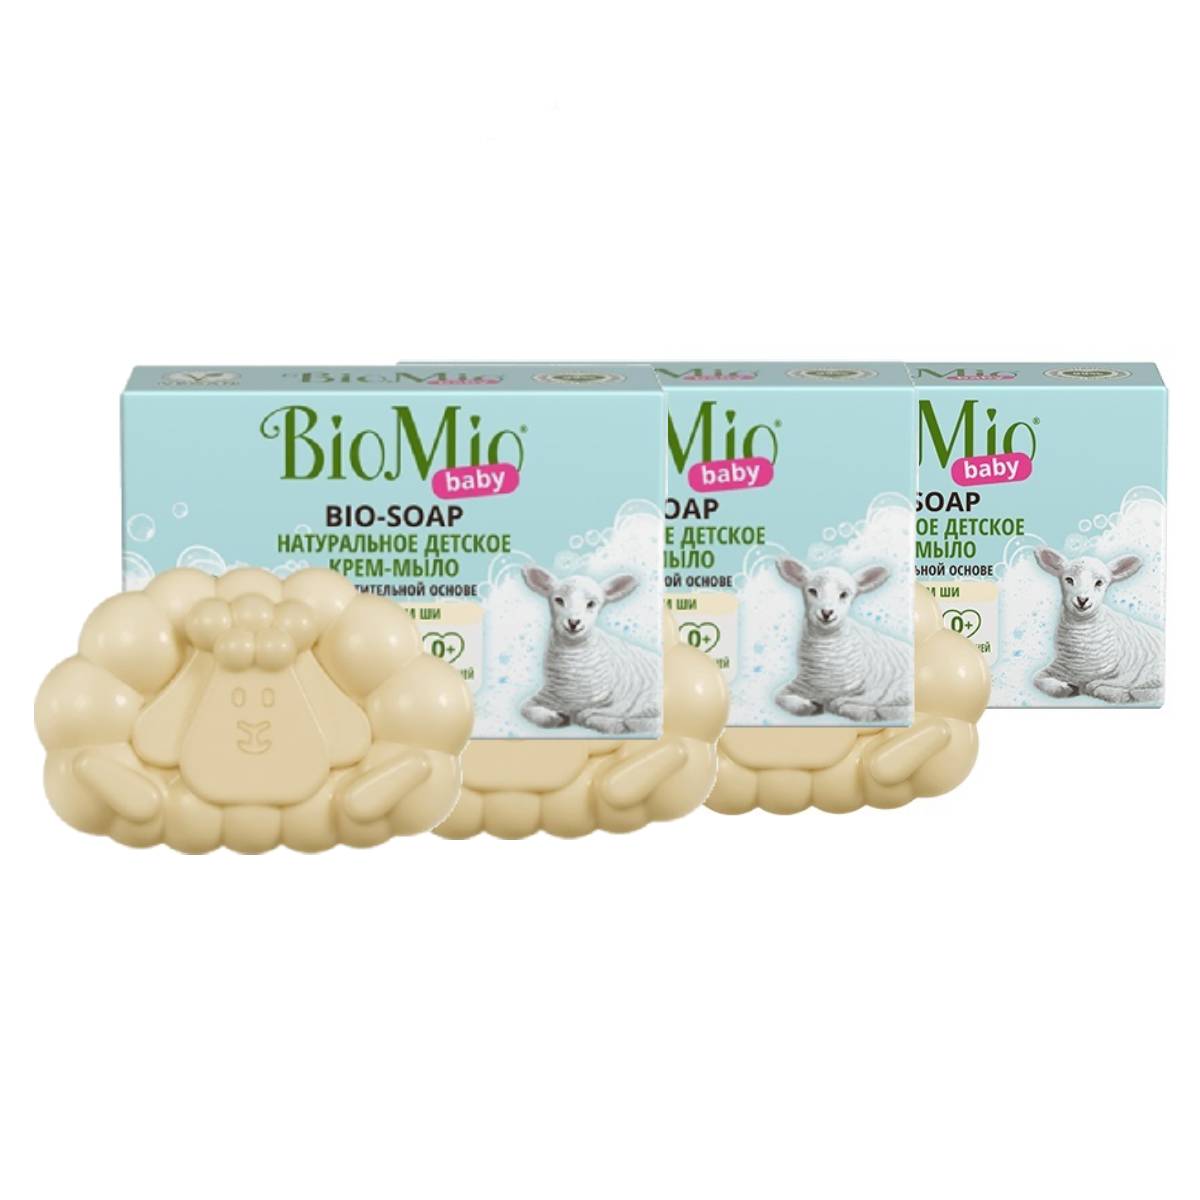 BioMio Натуральное детское крем-мыло с маслом ши, 3 х 90 г (BioMio, Мыло) мыло детское алиса 150 г